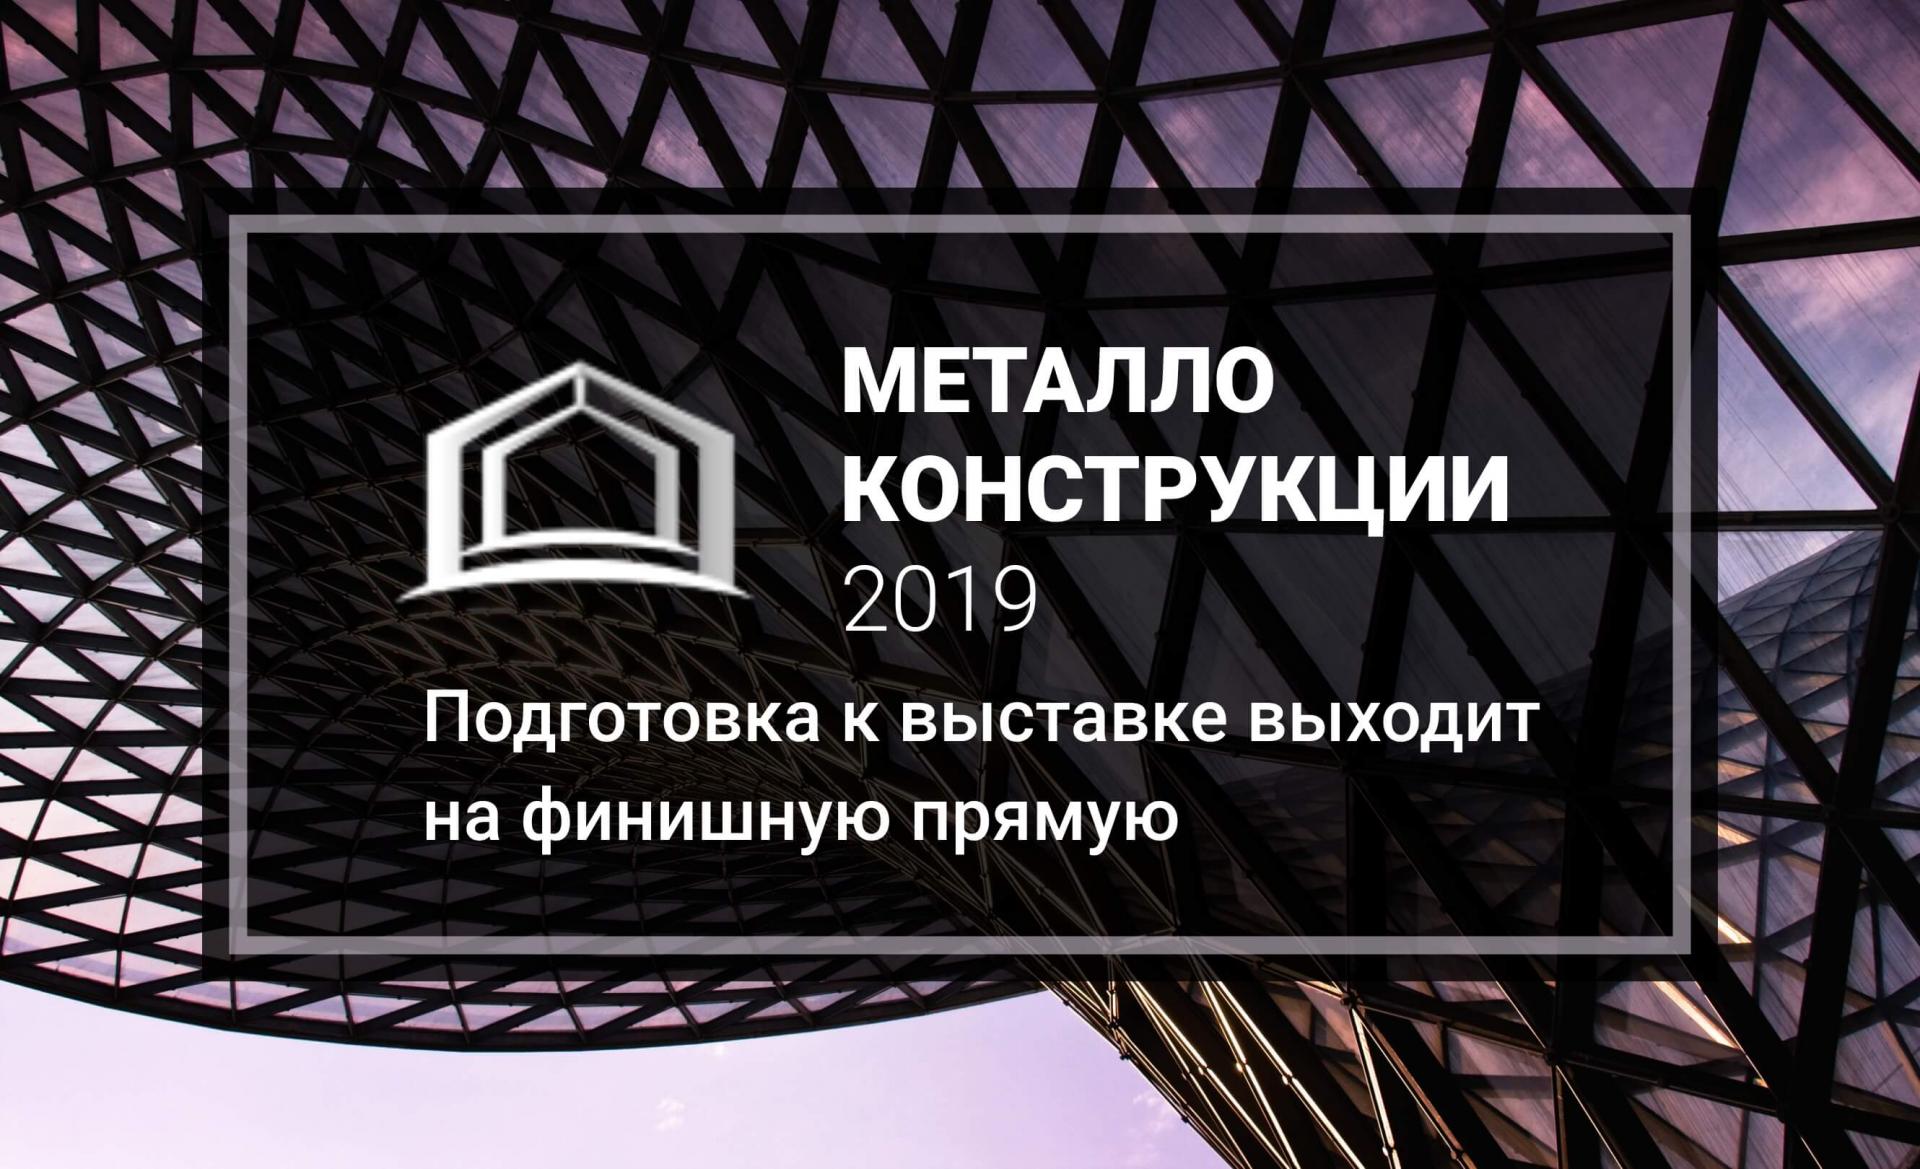 Подготовка к выставке «Металлоконструкции’2019» выходит на финишную прямую